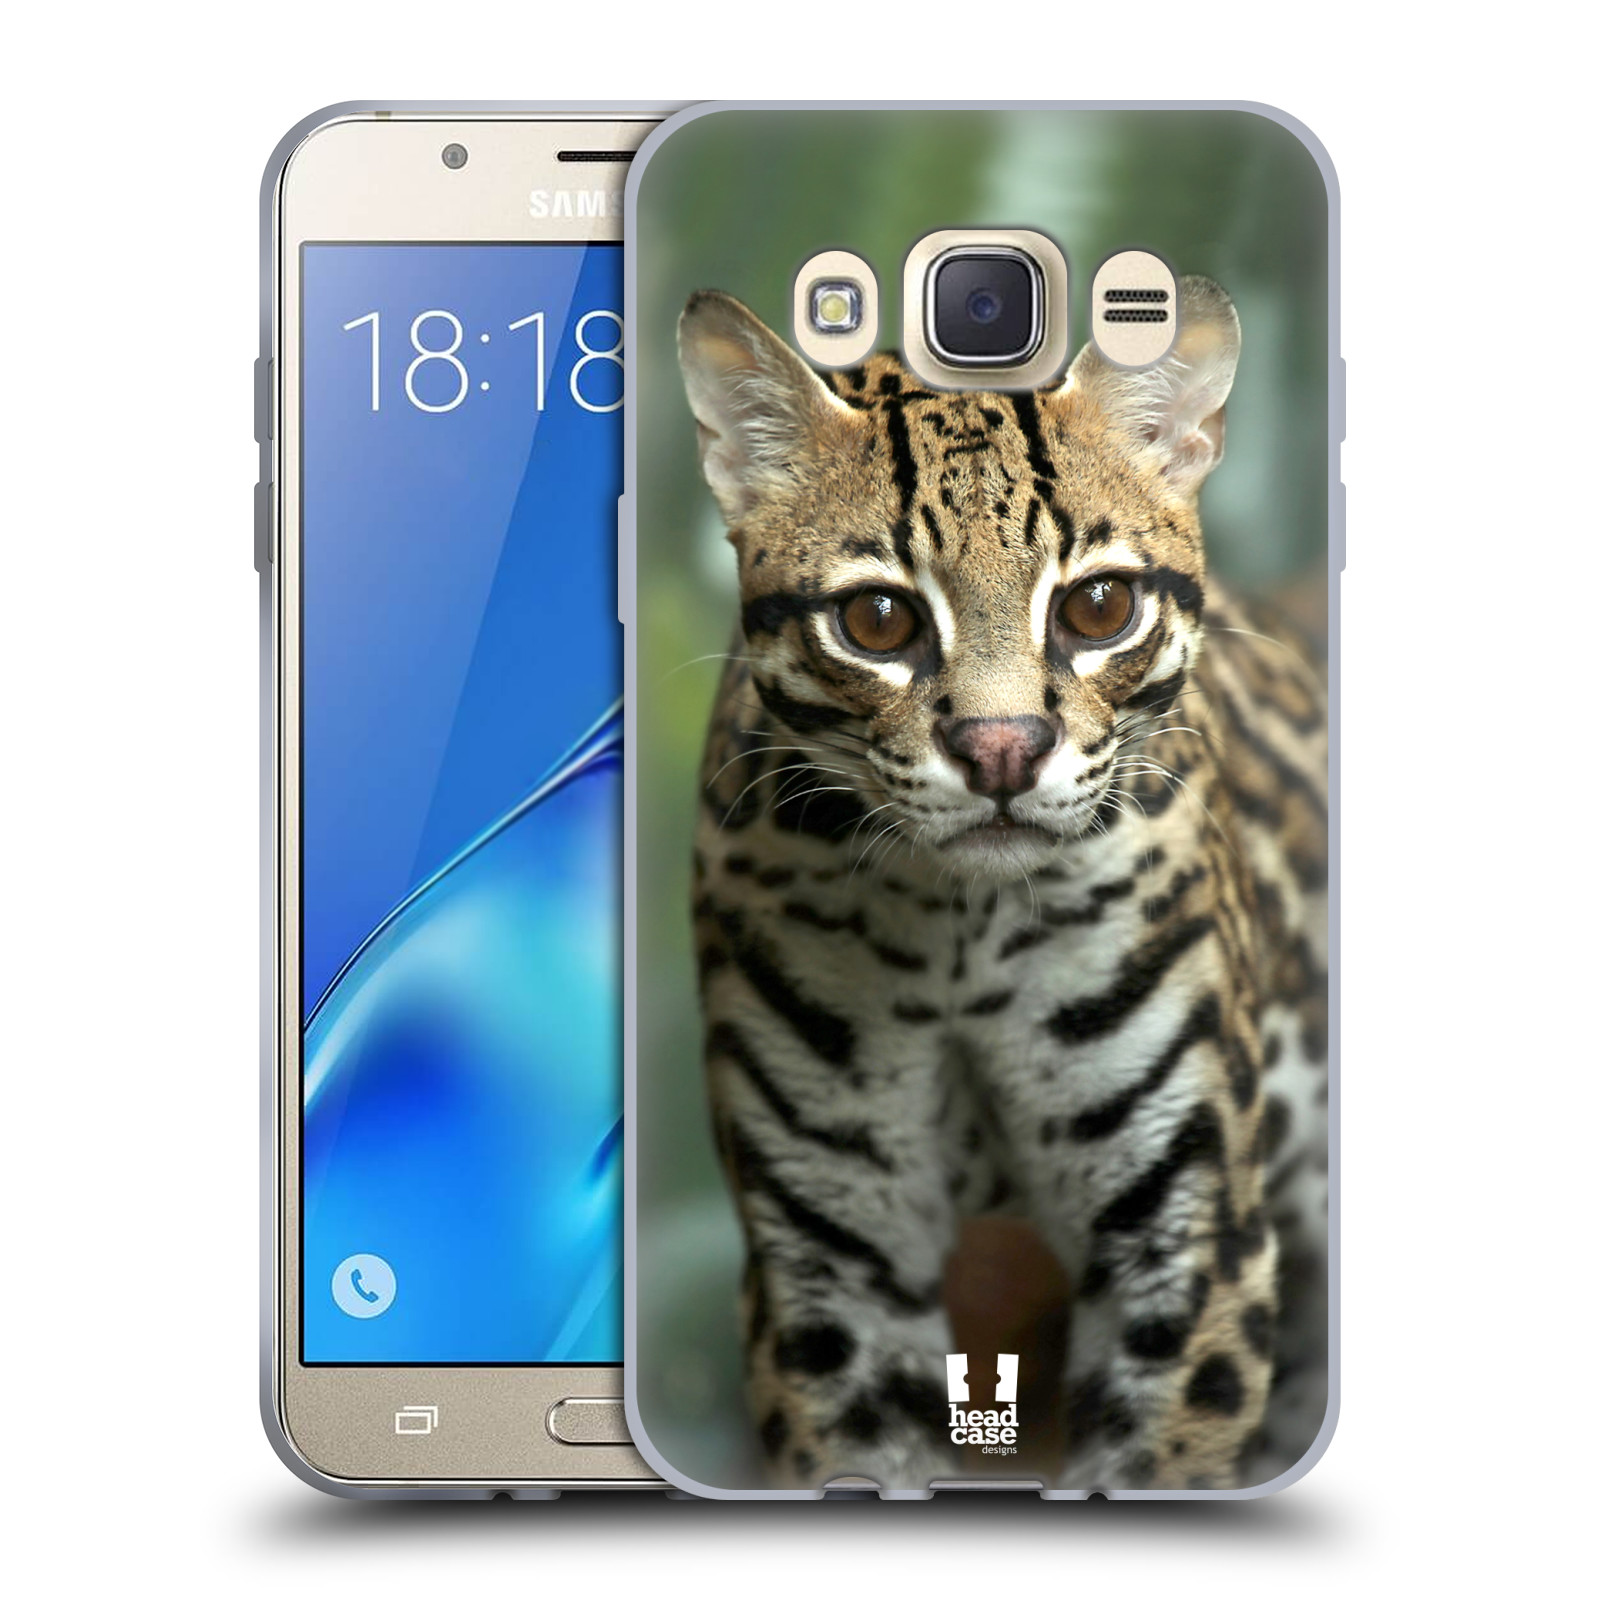 HEAD CASE silikonový obal, kryt na mobil Samsung Galaxy J7 2016 (J710, J710F) vzor slavná zvířata foto ocelot